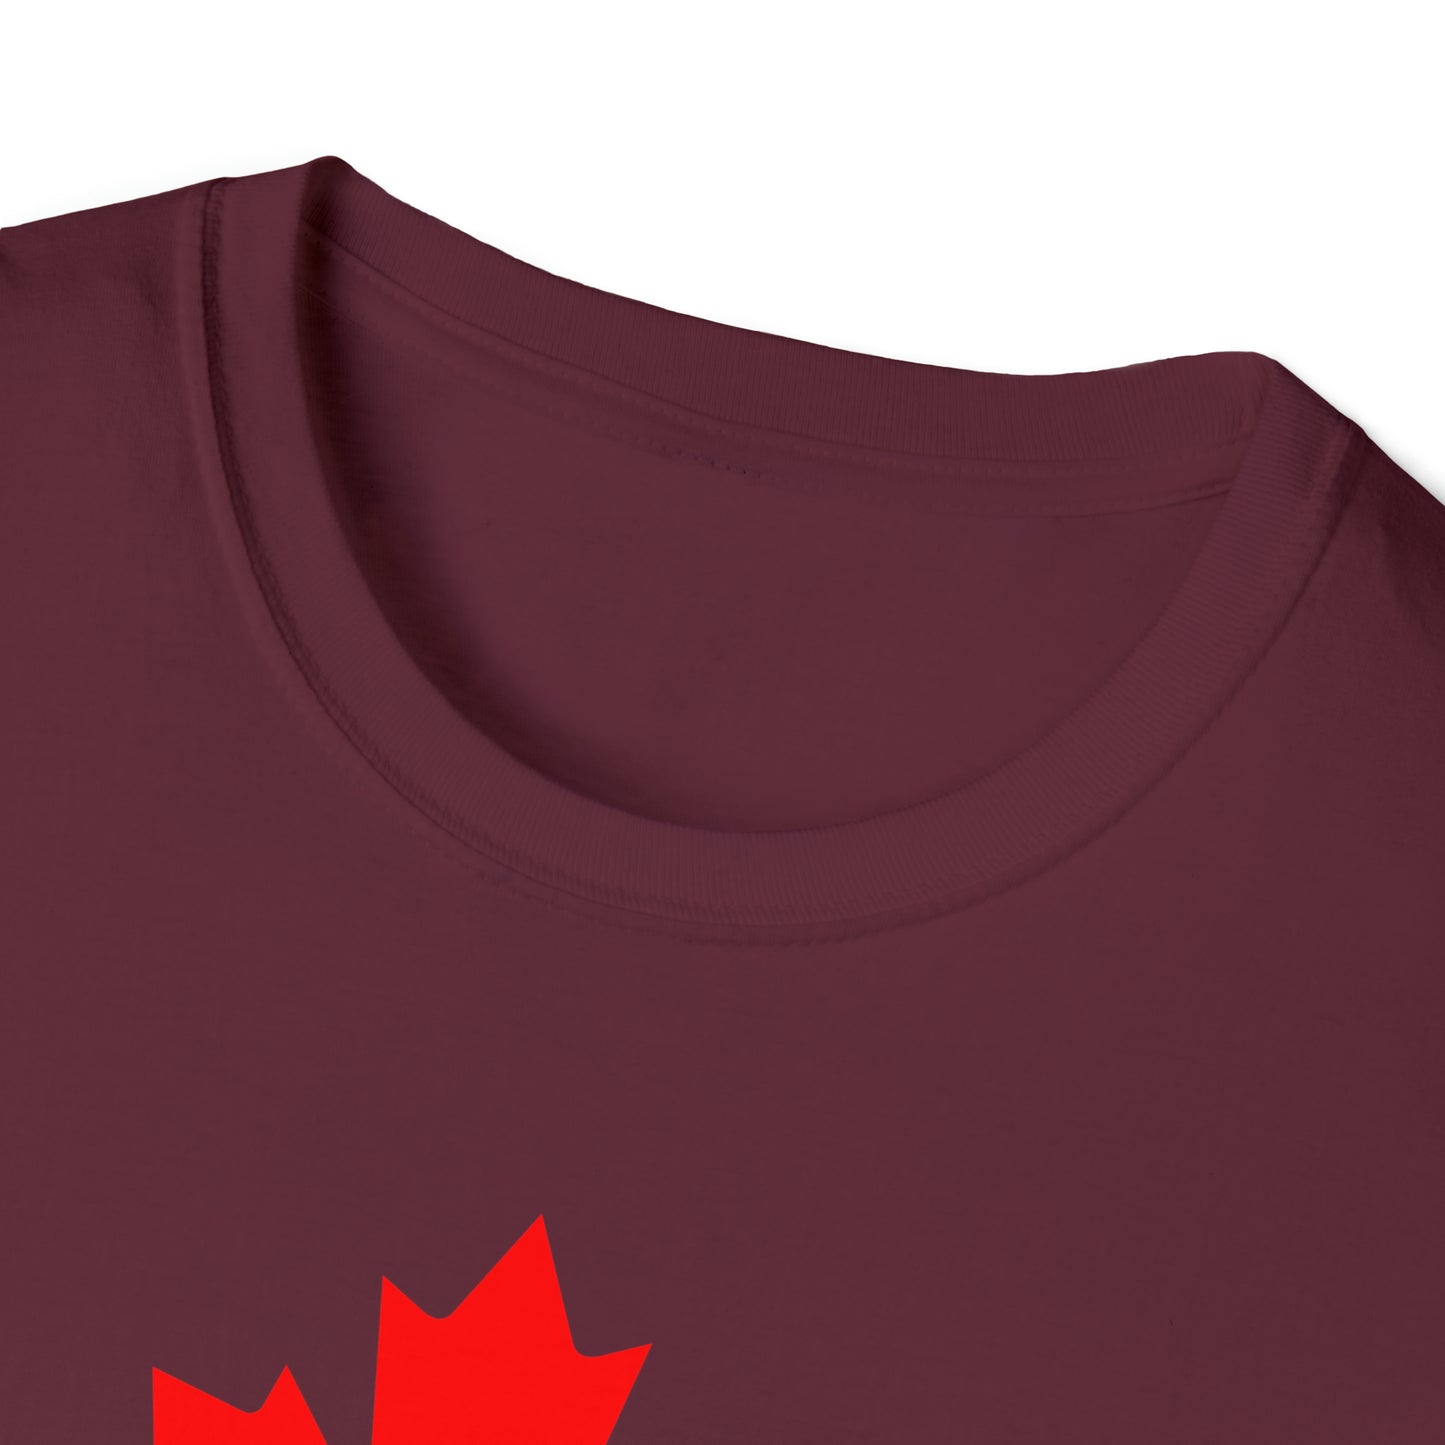 Canadian Maple Leaf, Unisex Softstyle T-Shirt